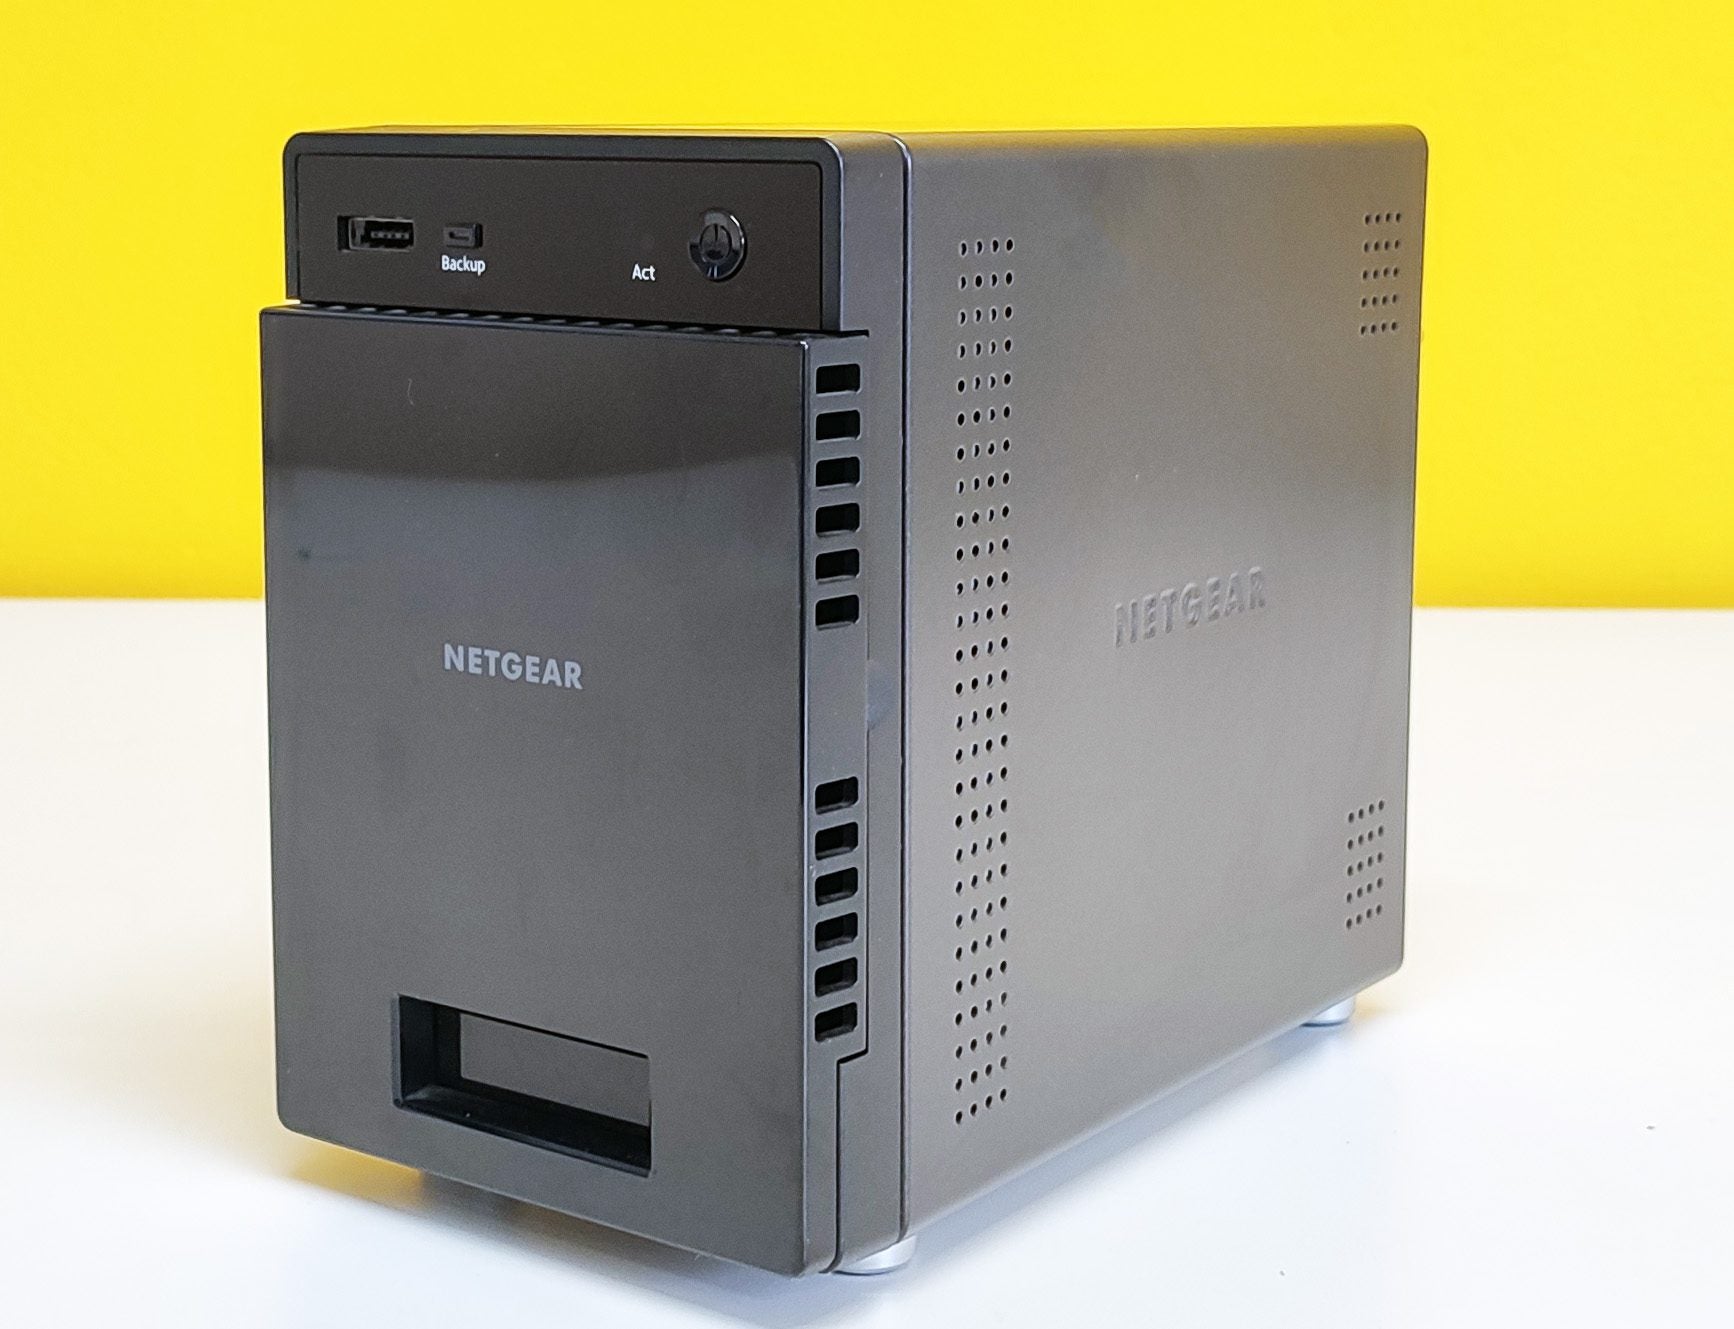 Netgear ReadyNAS 314 Nas 4Bay | Intel Atom | Ram 2Gb | 2xGigabit Ethernet | USB3 Sata 4x2Tb Hard Disk Included